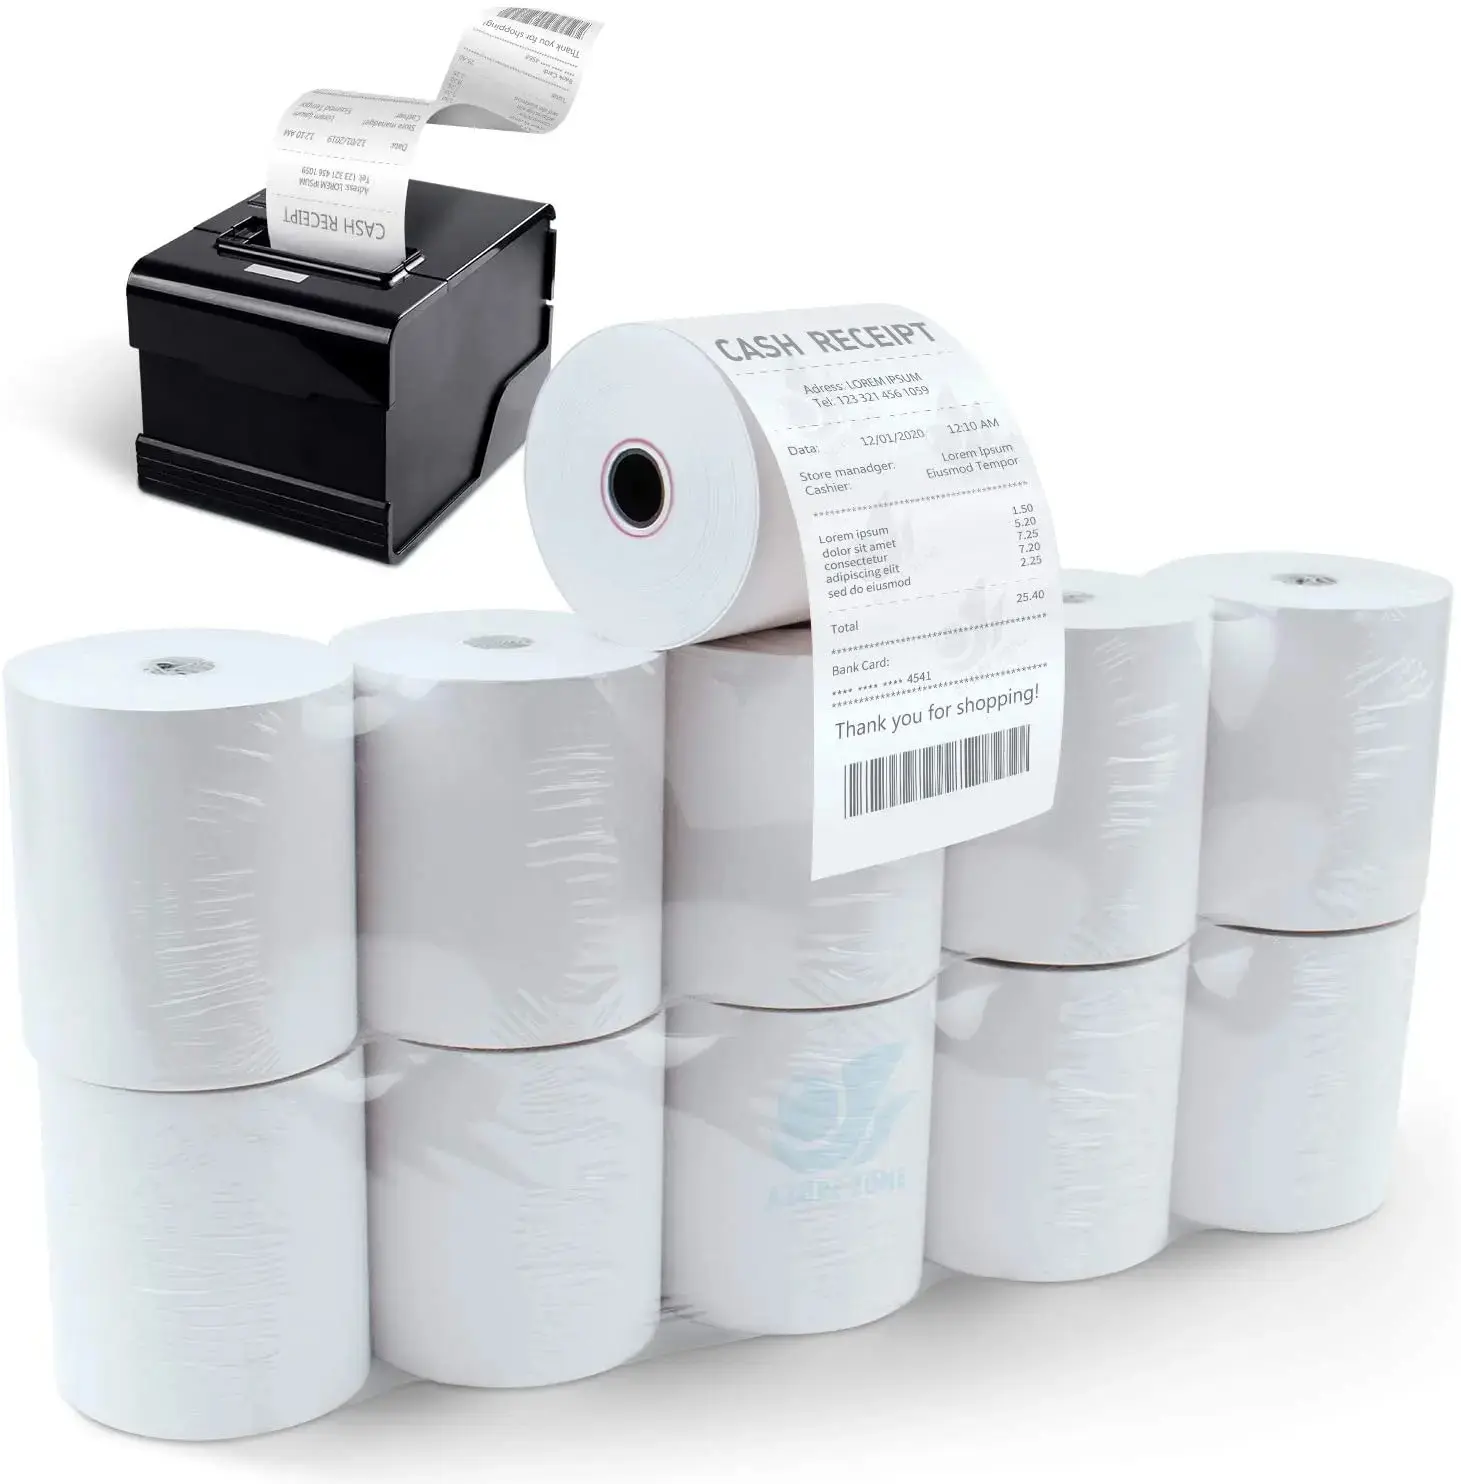 Rouleau de papier fax thermique 80x80mm pour caisse enregistreuse pour imprimantes thermiques